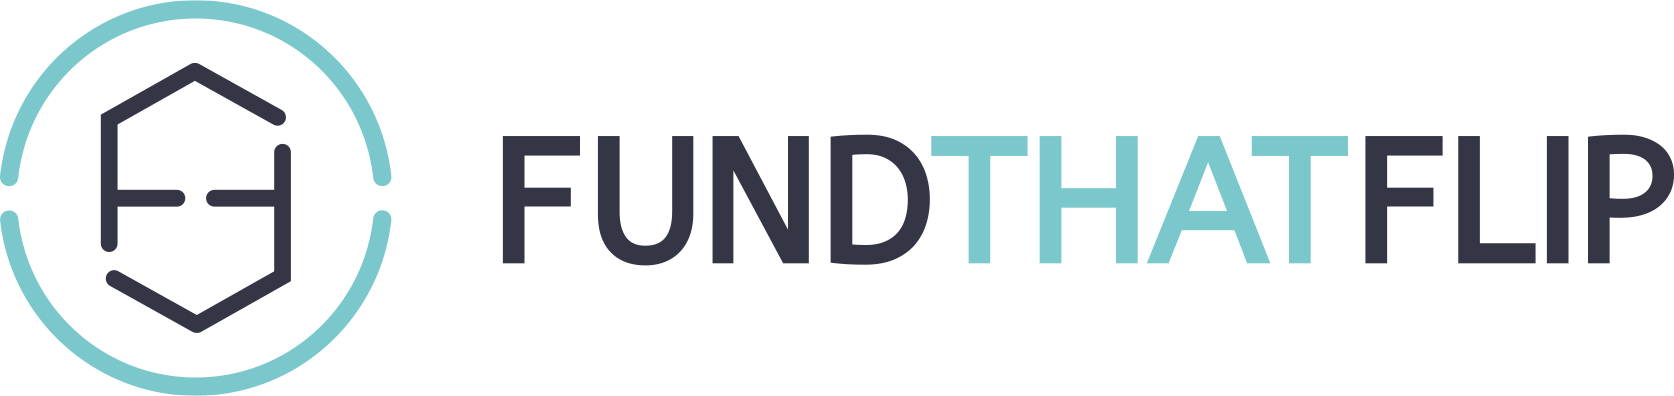 fundthatflip-logo new logo